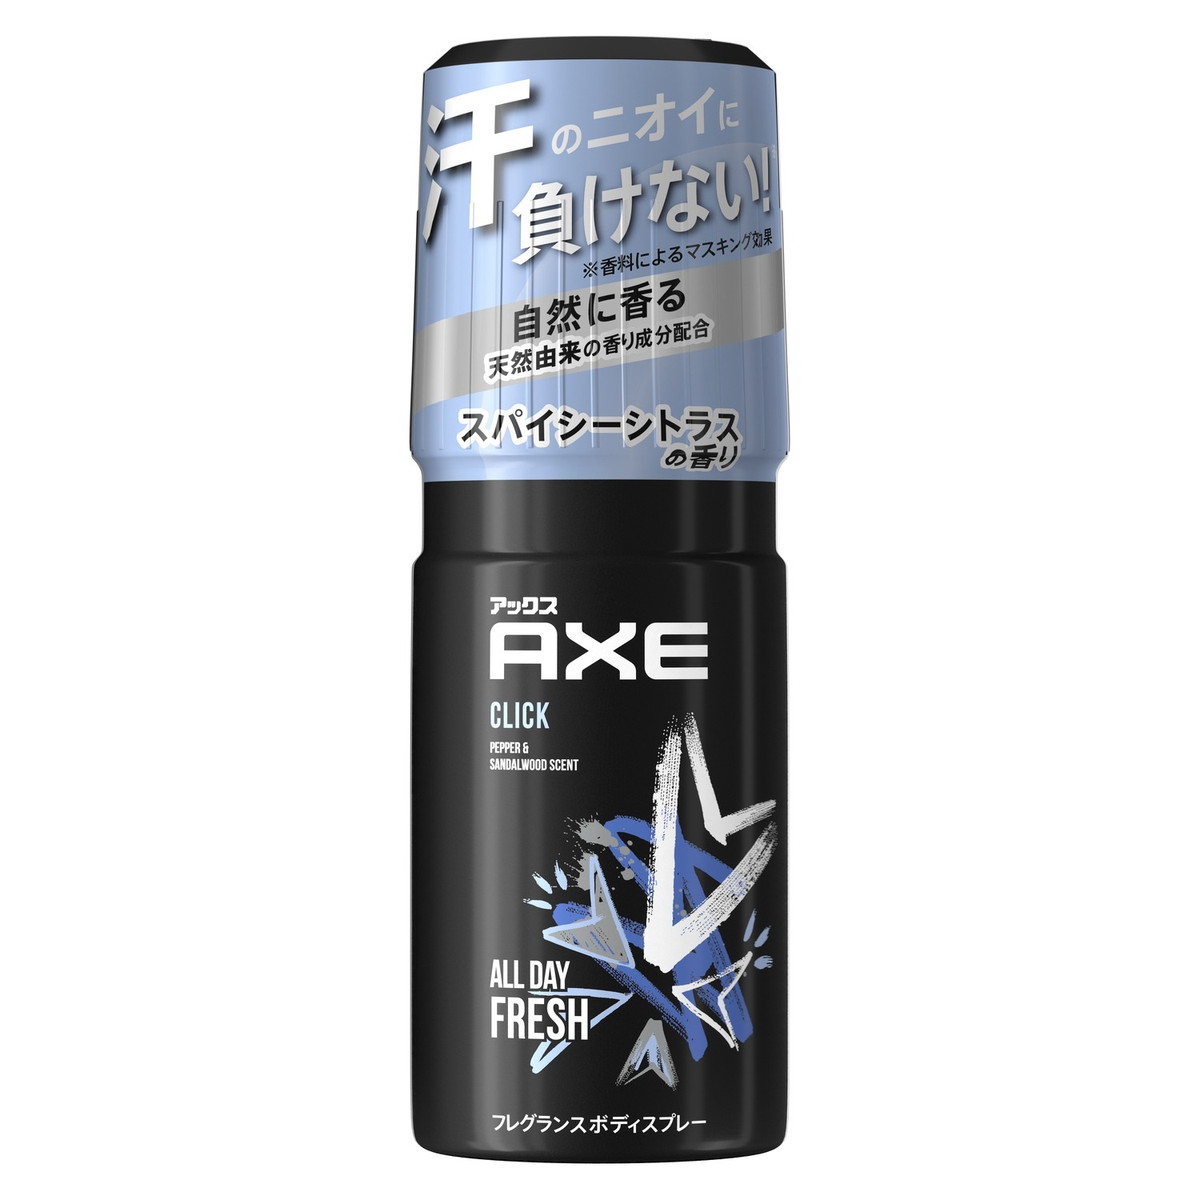 アックス ユニリーバ AXE アックス フレグランスボディスプレー クリック 60g 全身からほのかに香るフレグランススプレー 大人っぽいスパイシーシトラスの香り